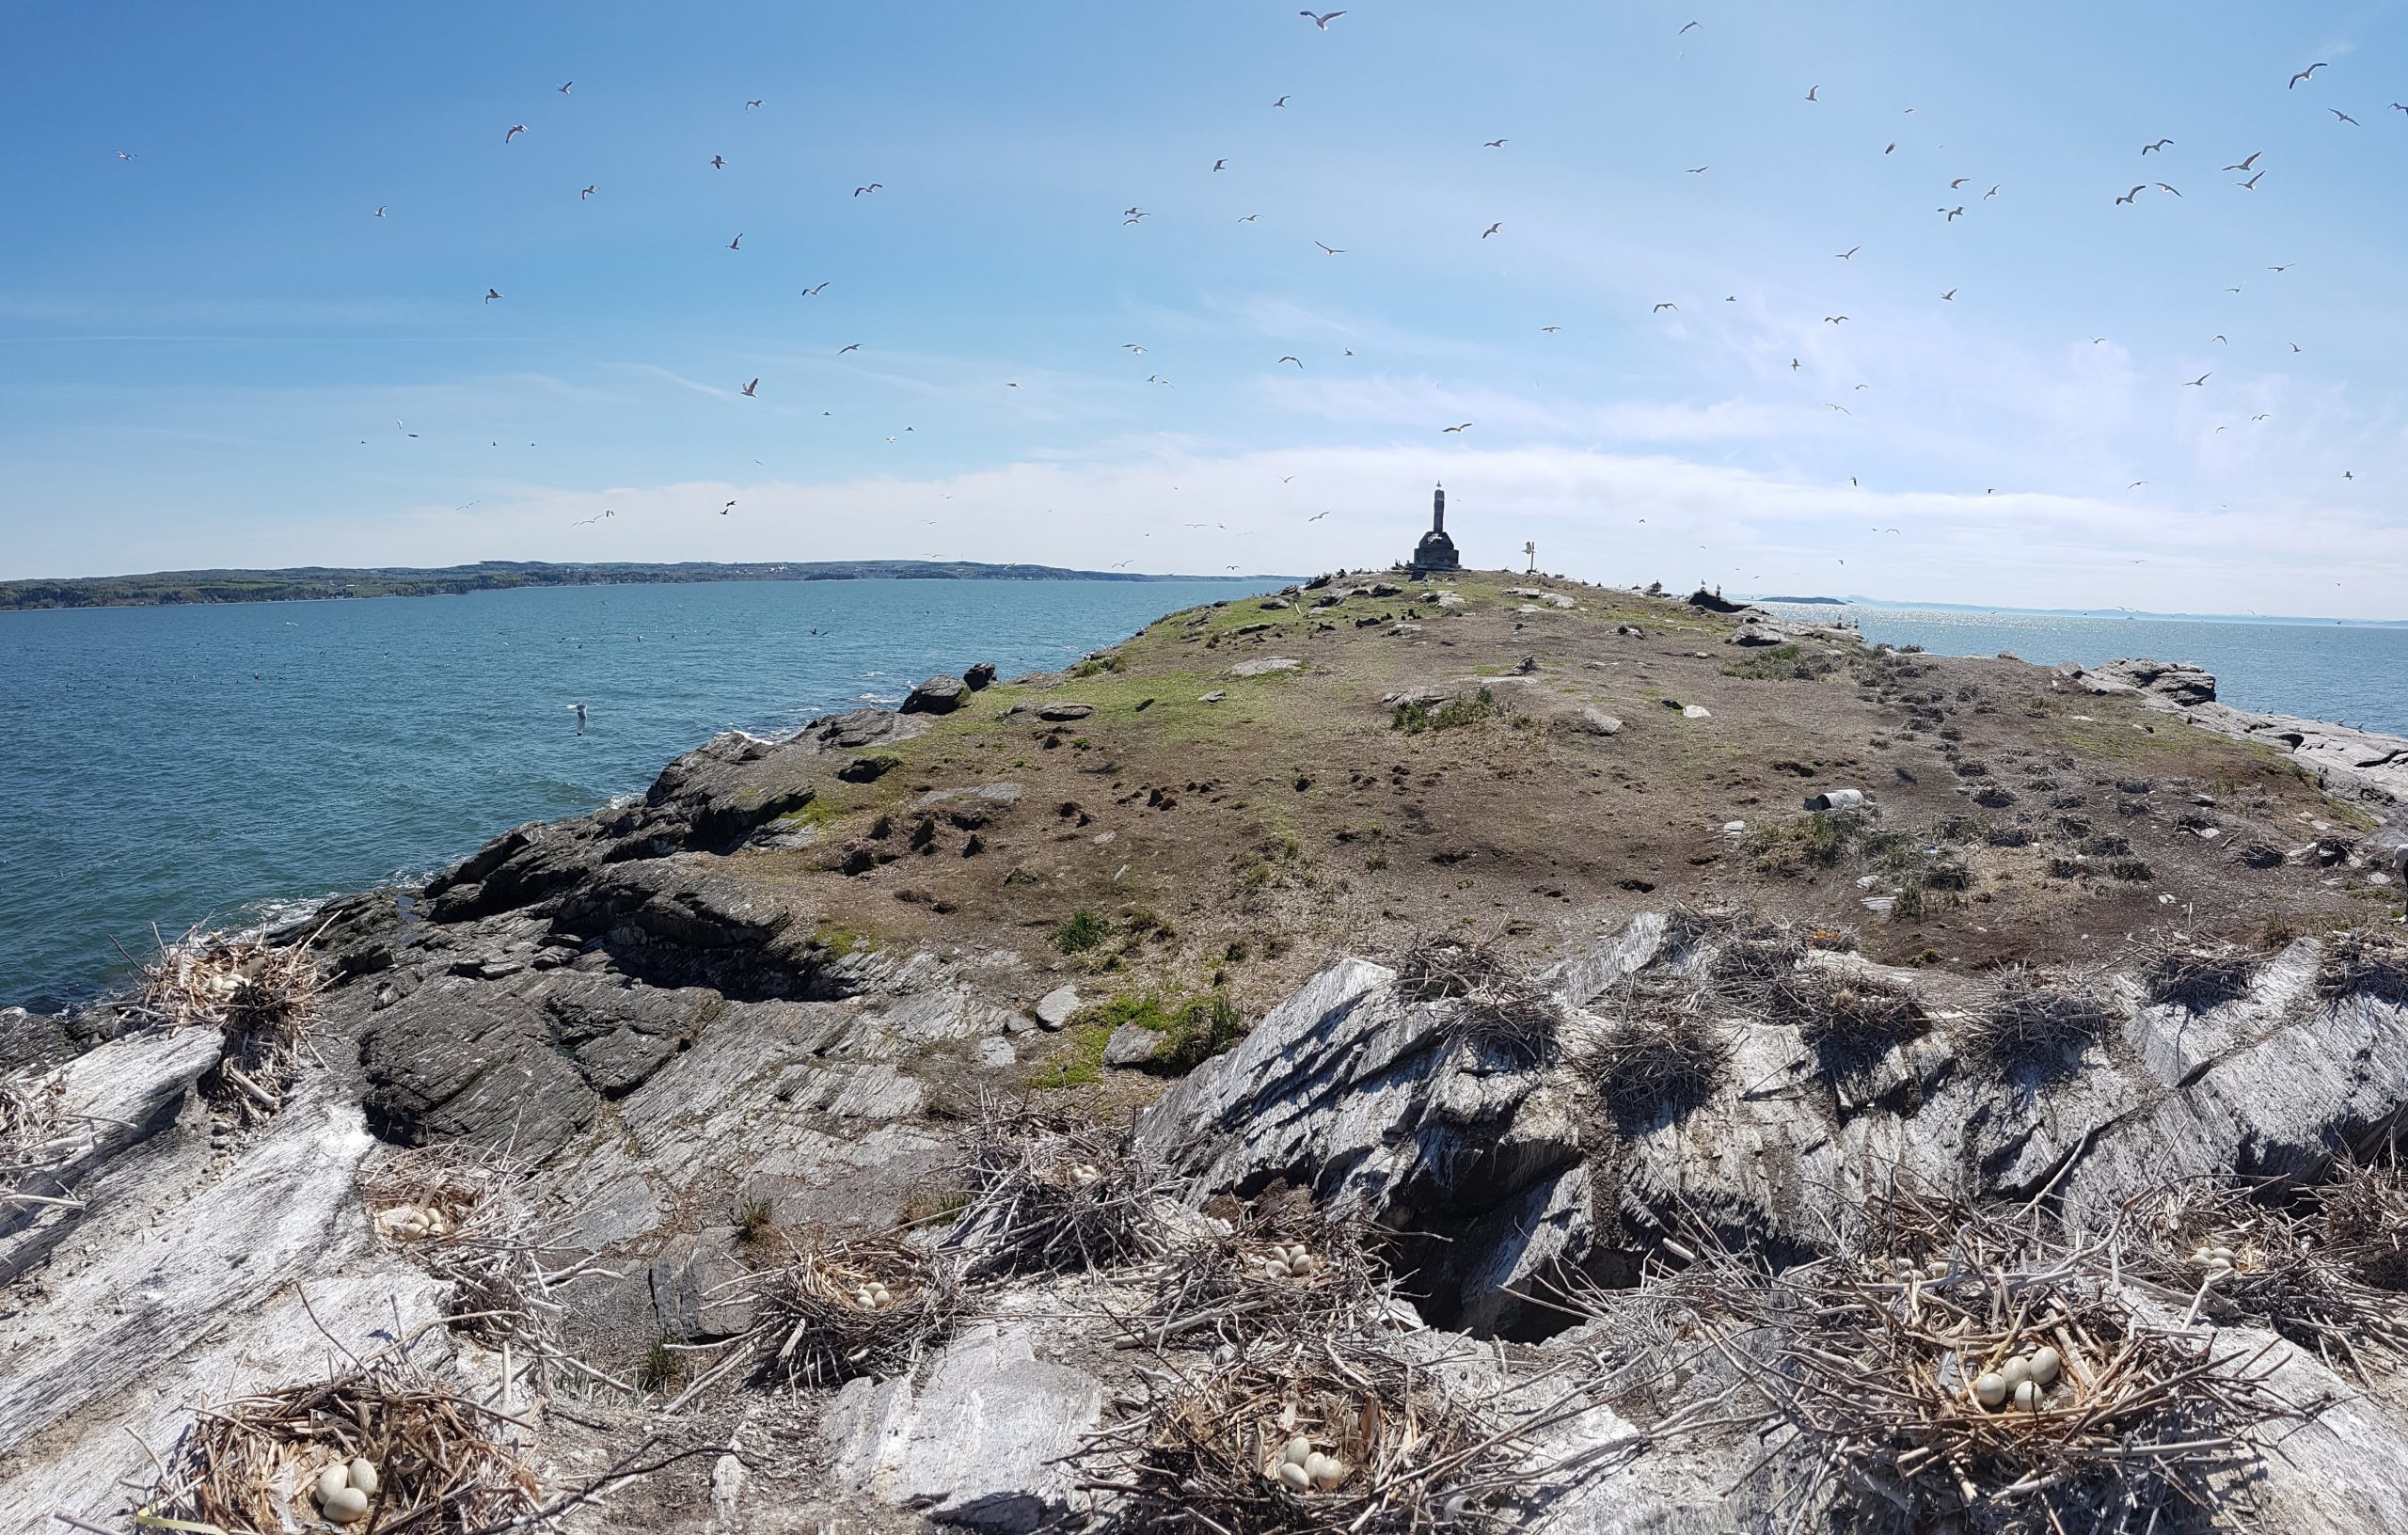 Inventaire des oiseaux marins aux îles Razade, le 27 mai 2018. Photo: Olivier Caron